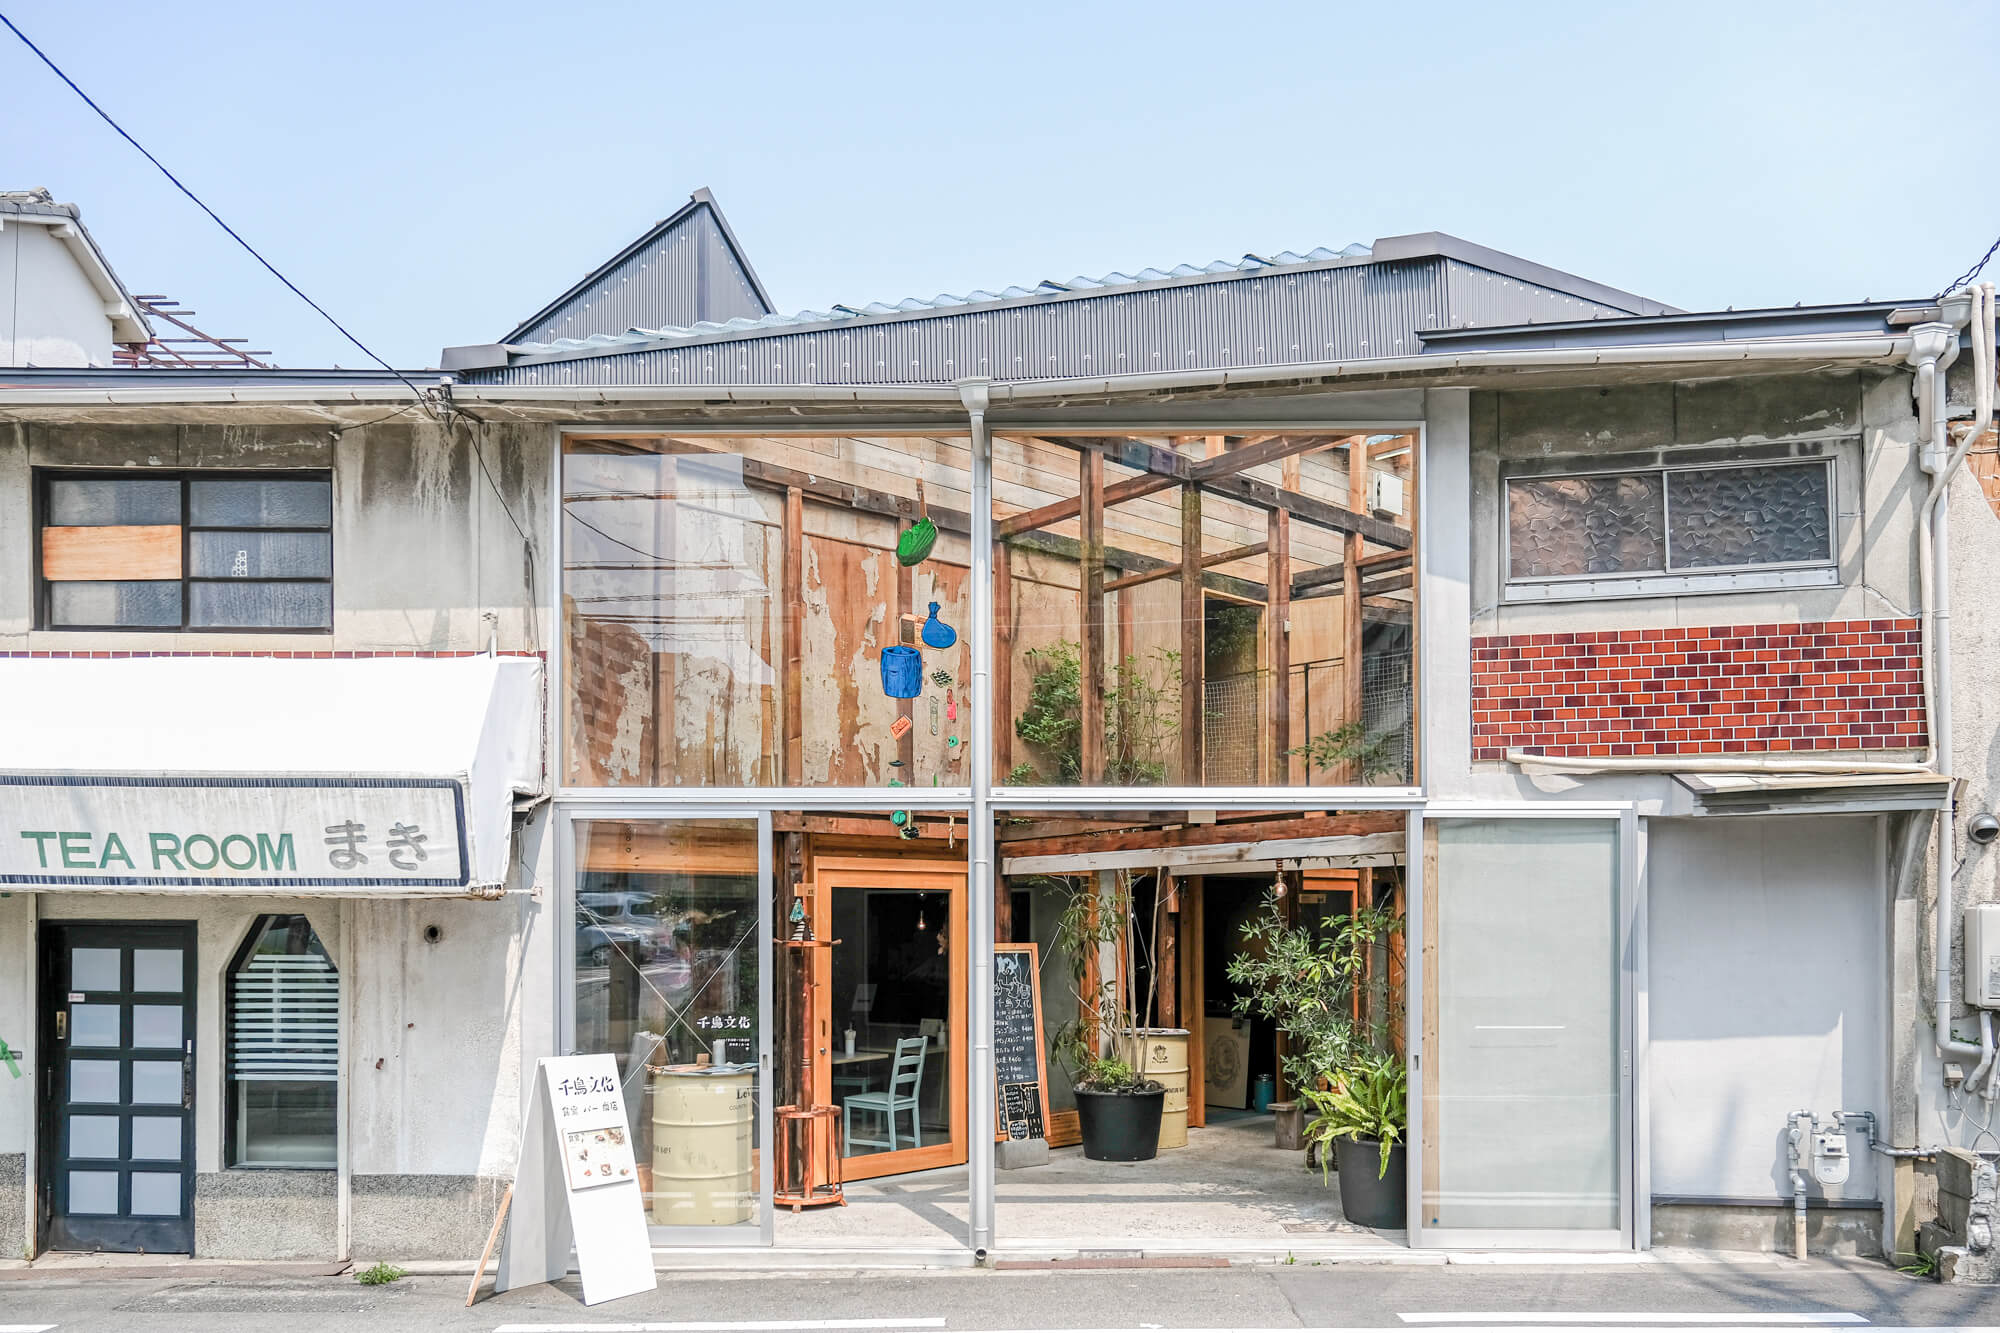 北加賀屋の60年前の住宅が大変身 余白を残したリノベーションが人と人の交流を作る 北加賀屋 千鳥文化 クリエイティブな旅を作るメディア Neo Osaka